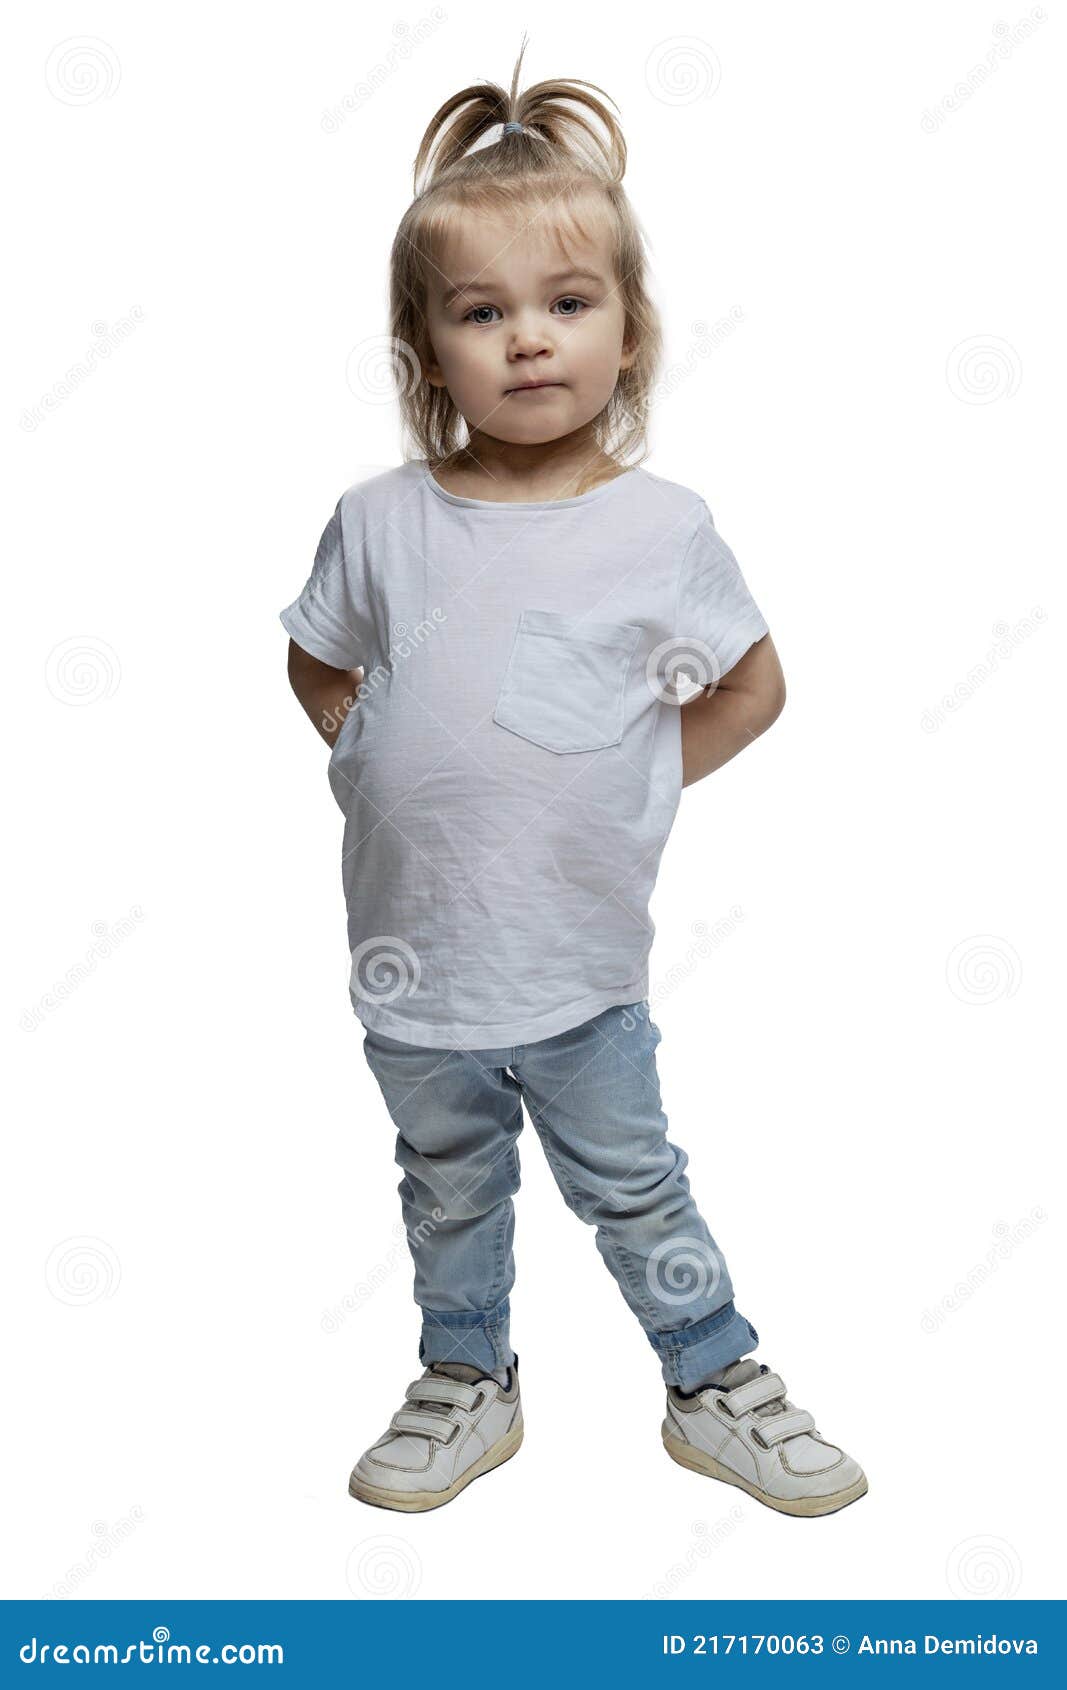 Retrato de una niña de 2 años aislado sobre fondo blanco.